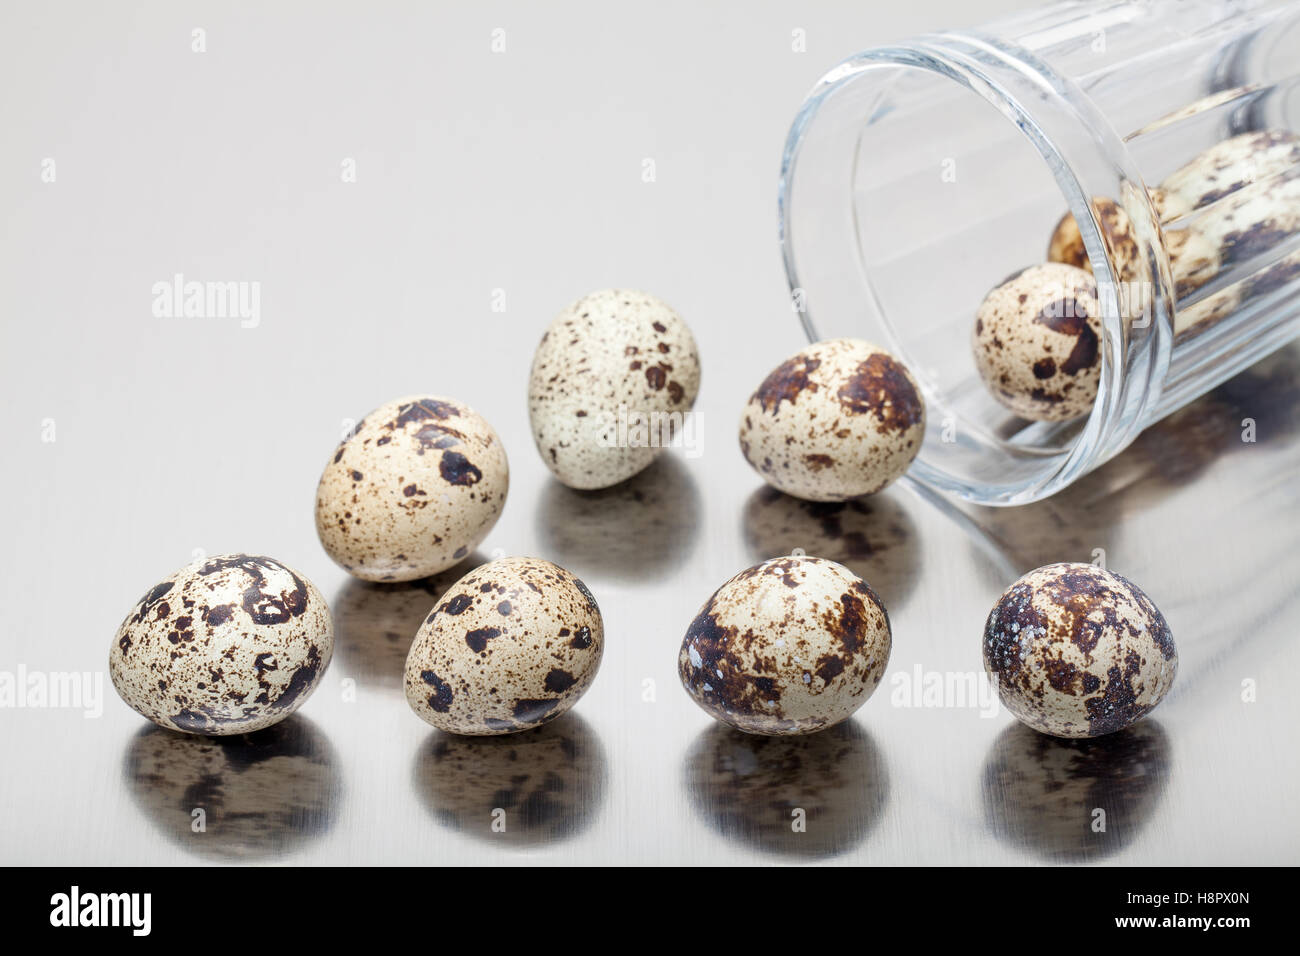 Wachtel-Eiern-Dump aus geschliffenem Glas auf grauem Hintergrund. Stockfoto